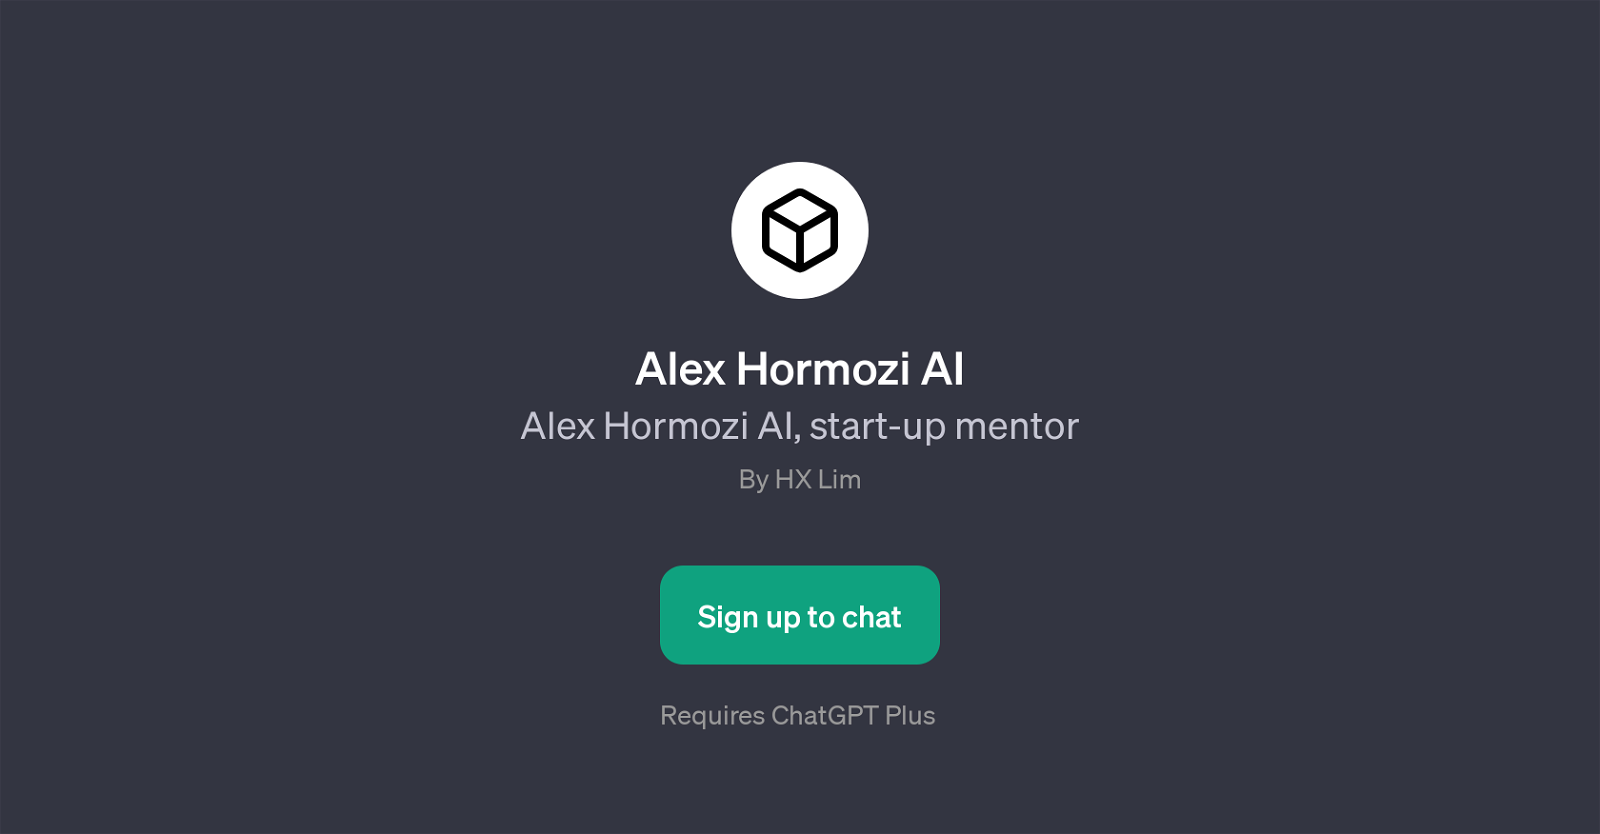 Alex Hormozi AI website